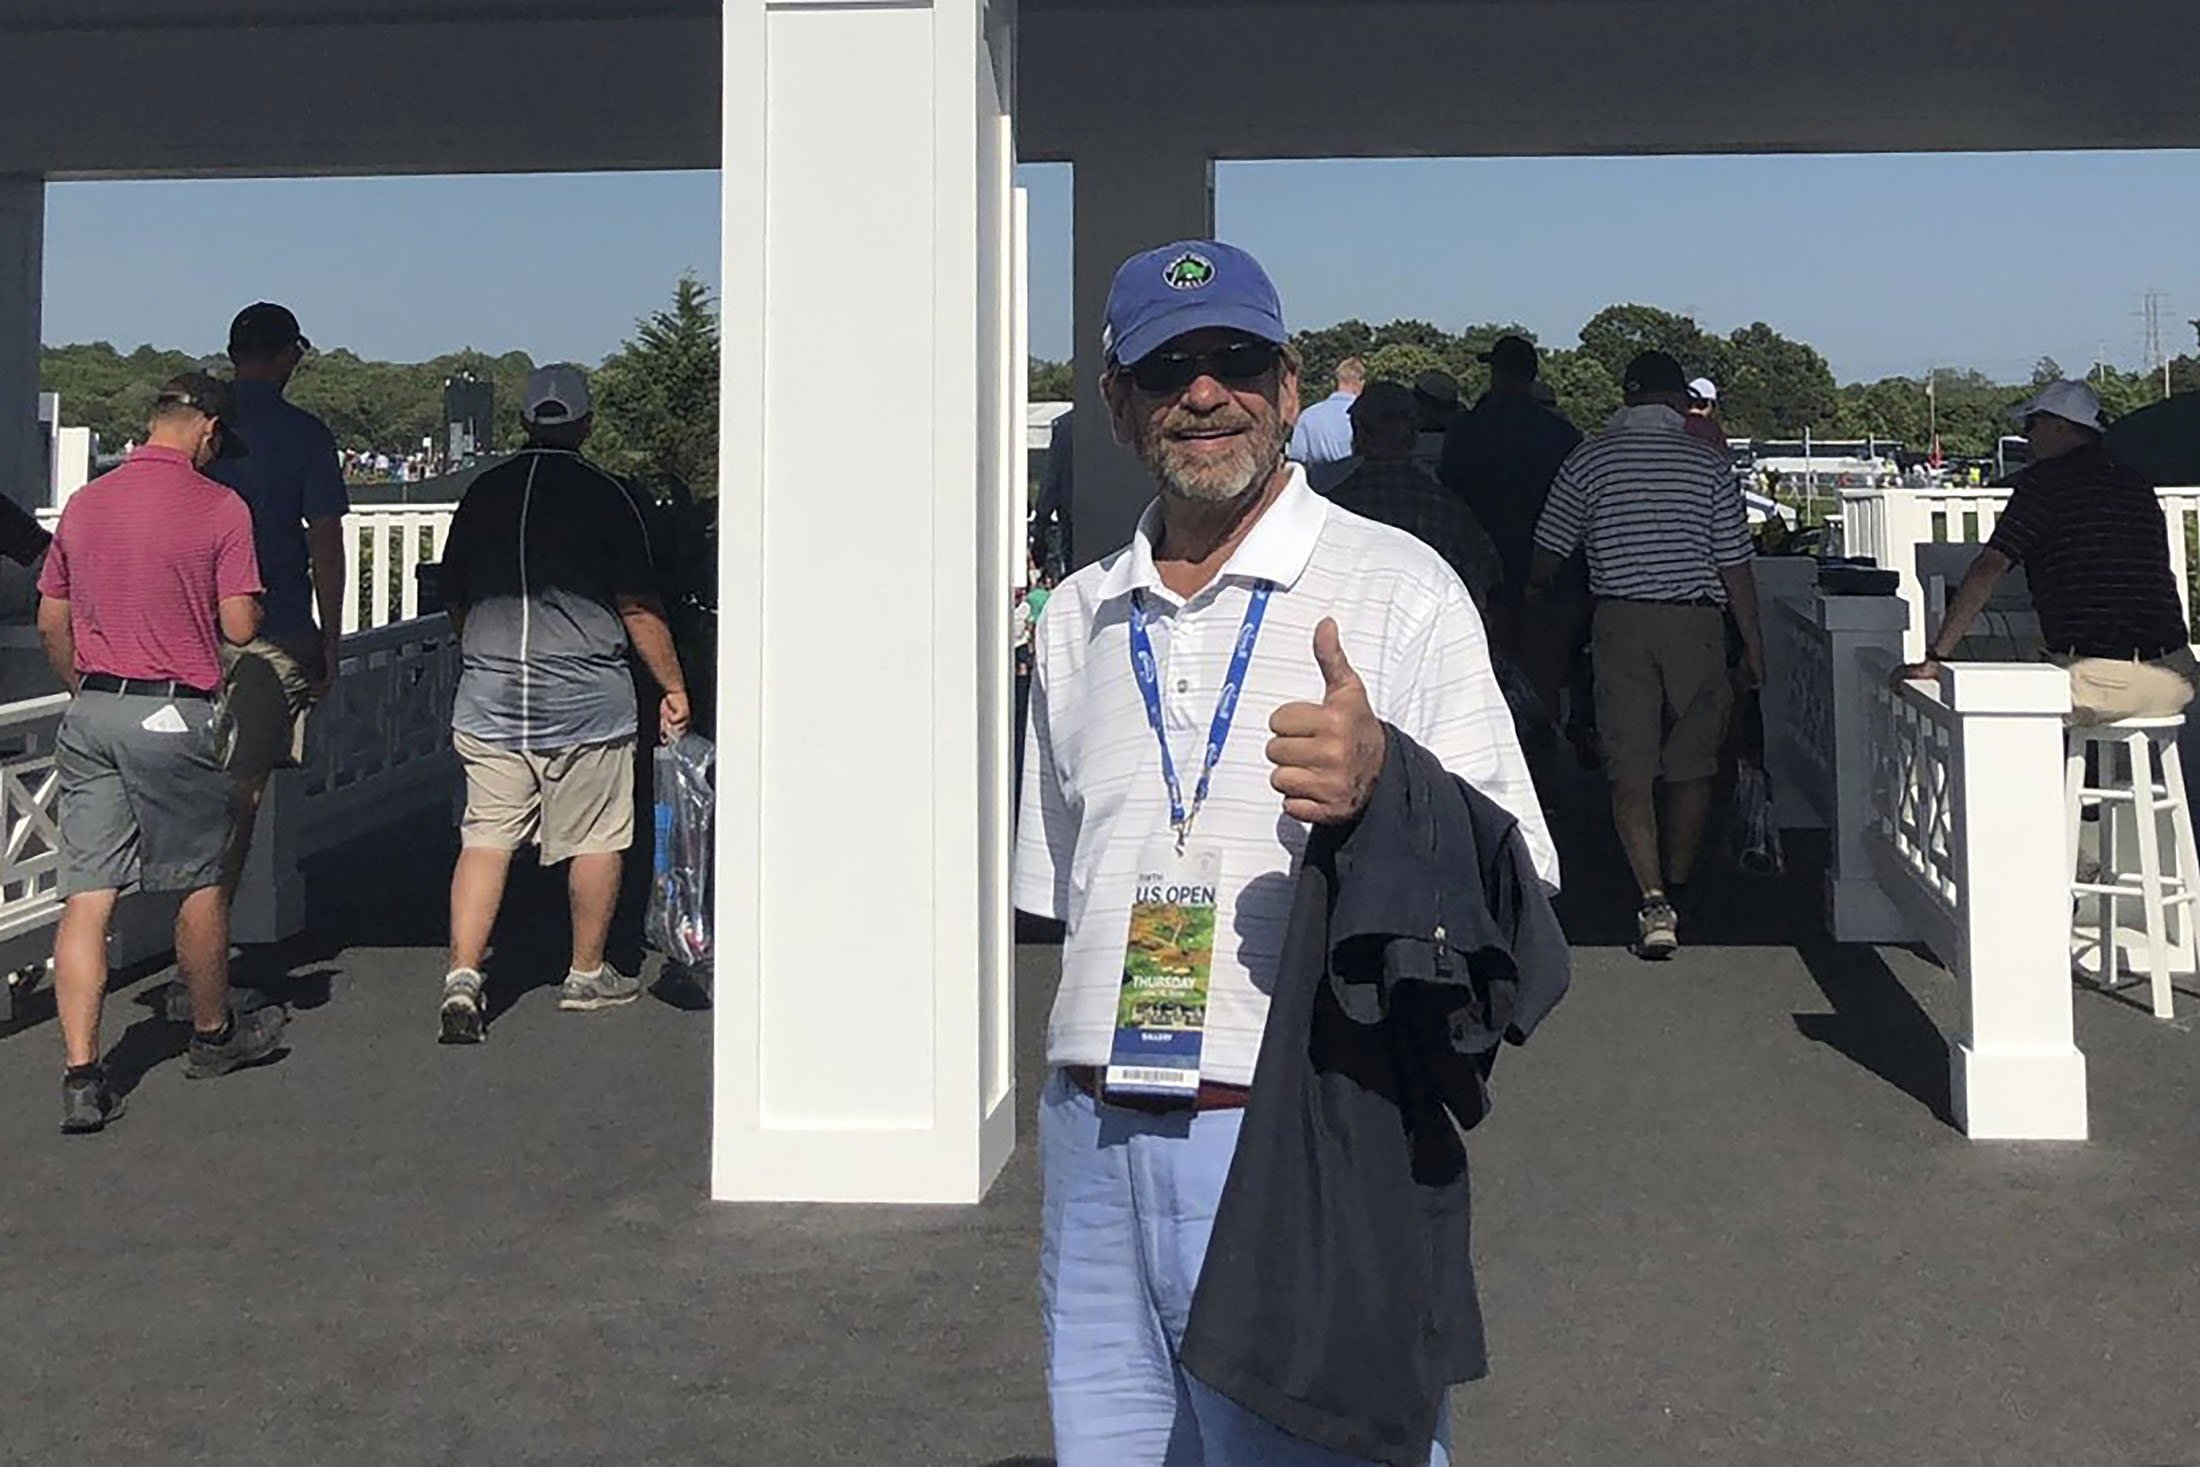 Tom Randele, yang nama aslinya menurut pihak berwenang adalah Ted Conrad, berdiri di depan sebuah foto di pintu masuk Turnamen Golf AS Terbuka 2018 di Klub Golf Shinnecock Hills, di Southampton, New York, AS (Bob Van Wert via AP)